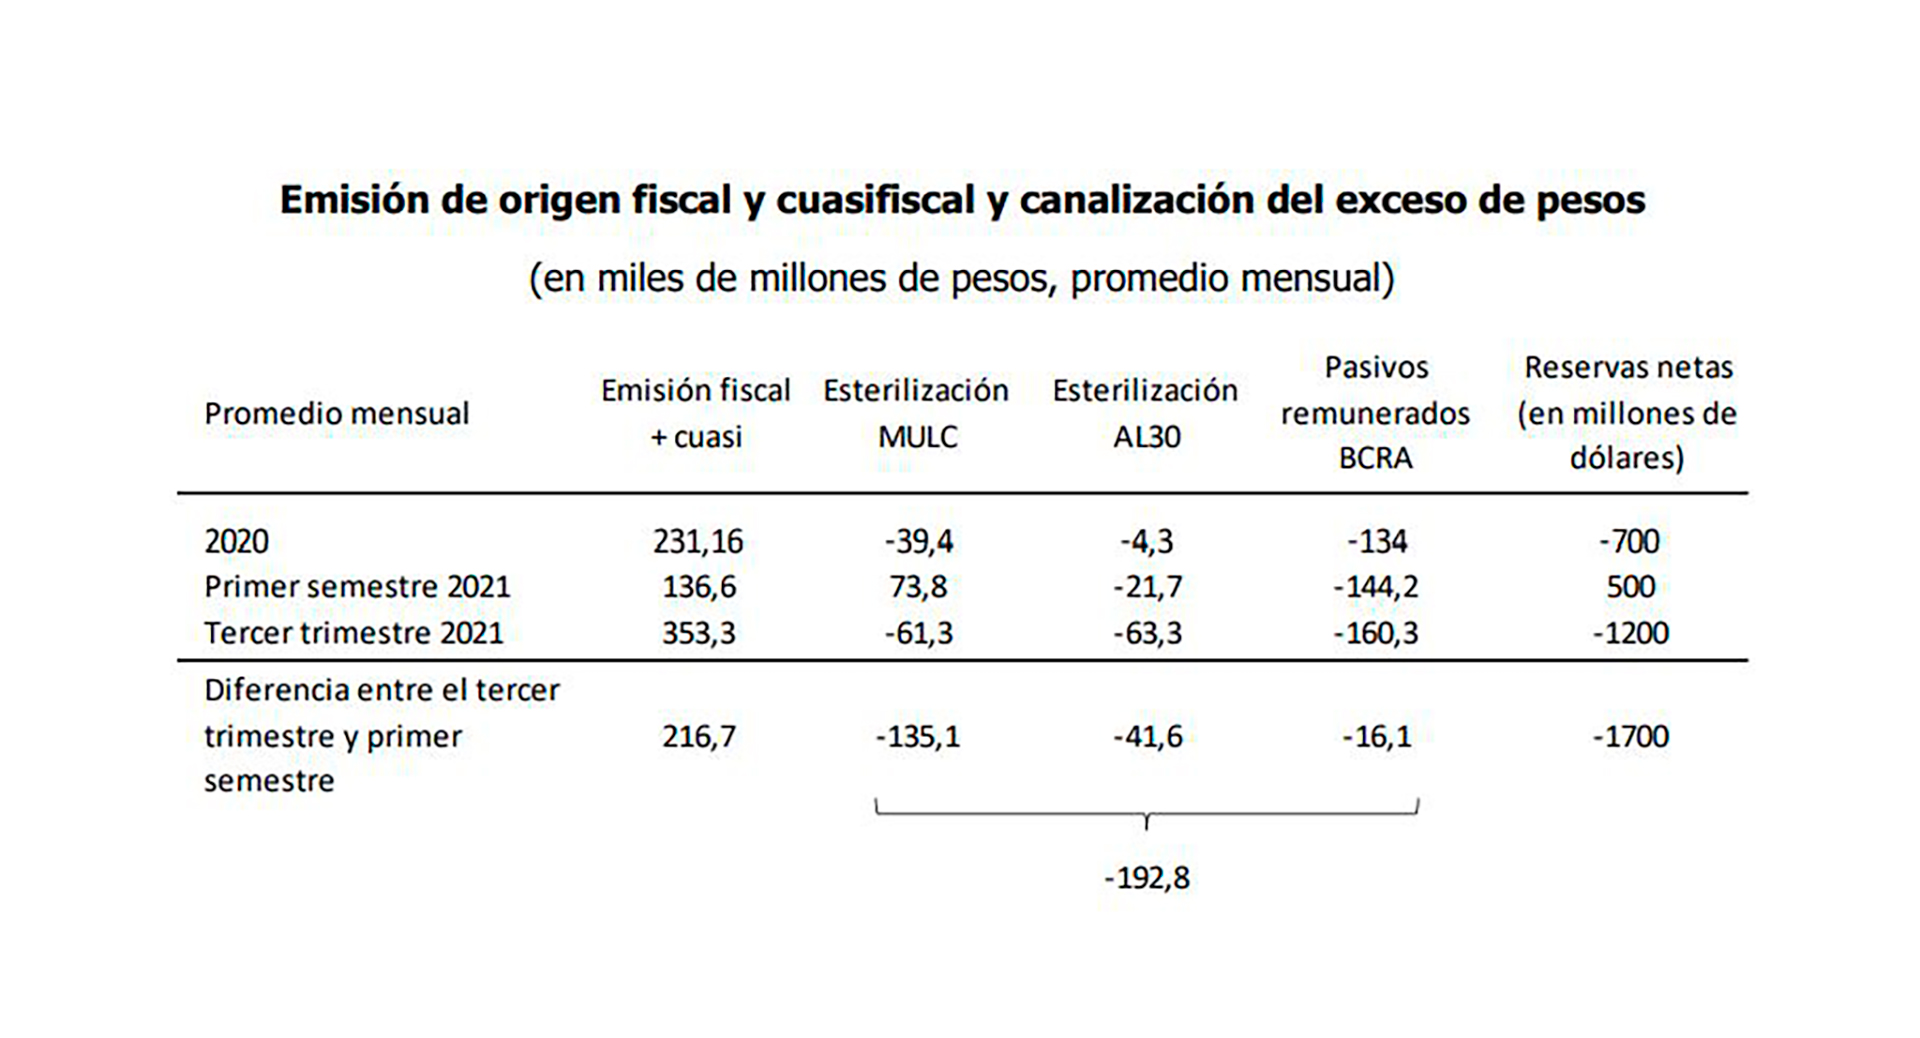 Los cálculos de Vasconcelos acerca de la emisión fiscal y cuasifiscal y el manejo monetario y de reservas en 2020, la primera mitad de 2021 y lo que va del segundo semestre